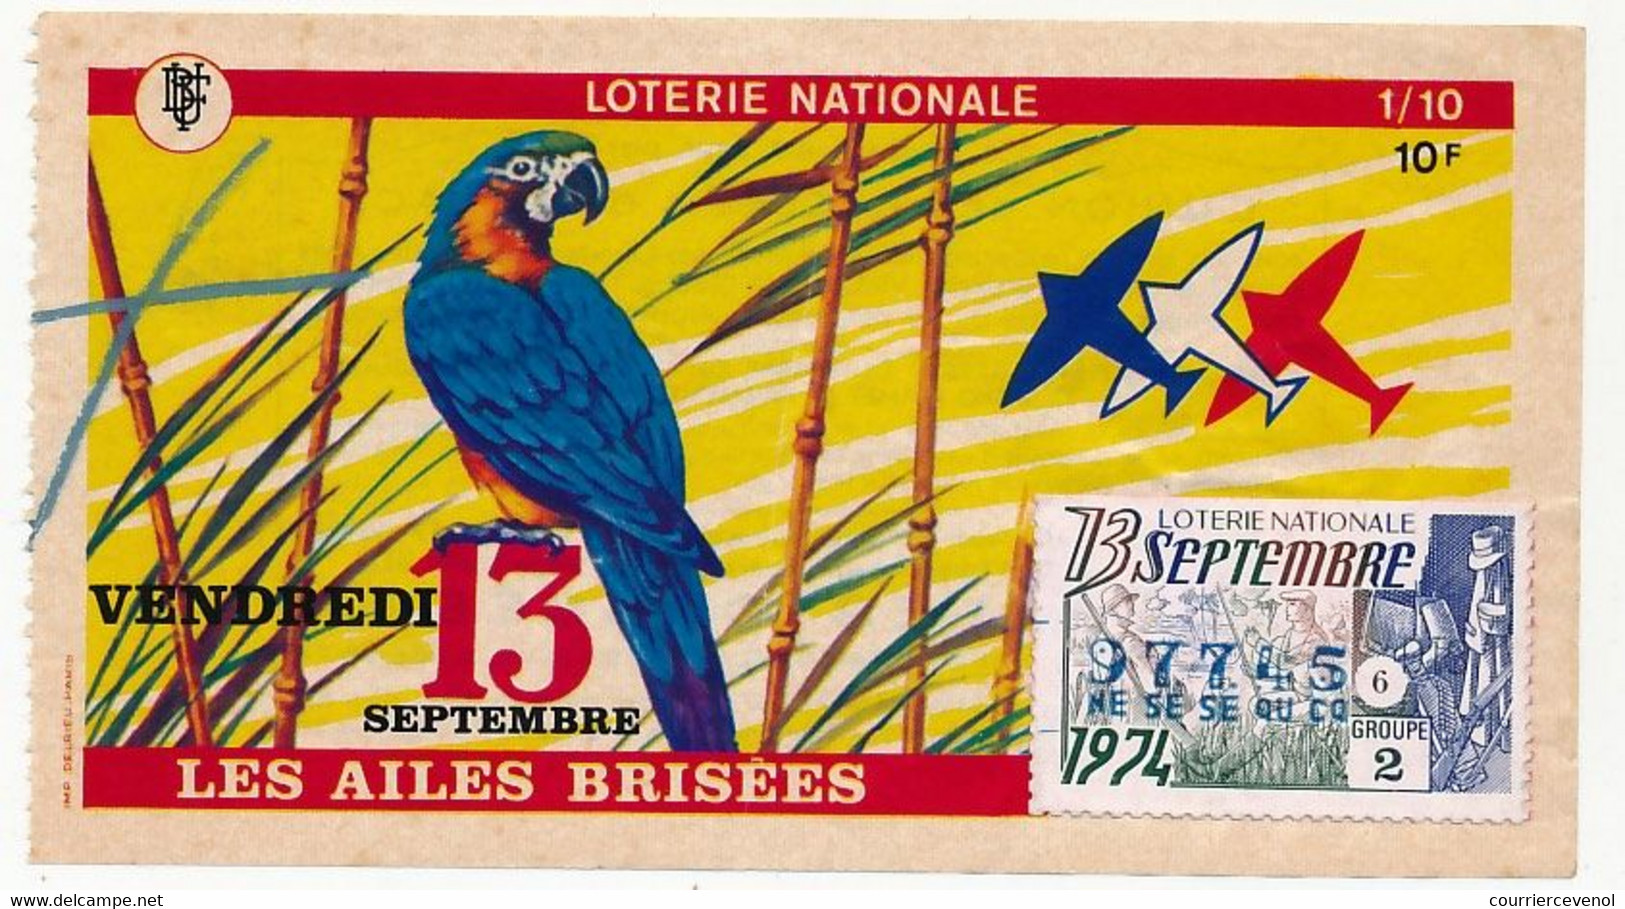 FRANCE - Loterie Nationale - 1/10ème - Les Ailes Brisées - (Perroquet) - Vendredi 13 Septembre 1974 - Loterijbiljetten